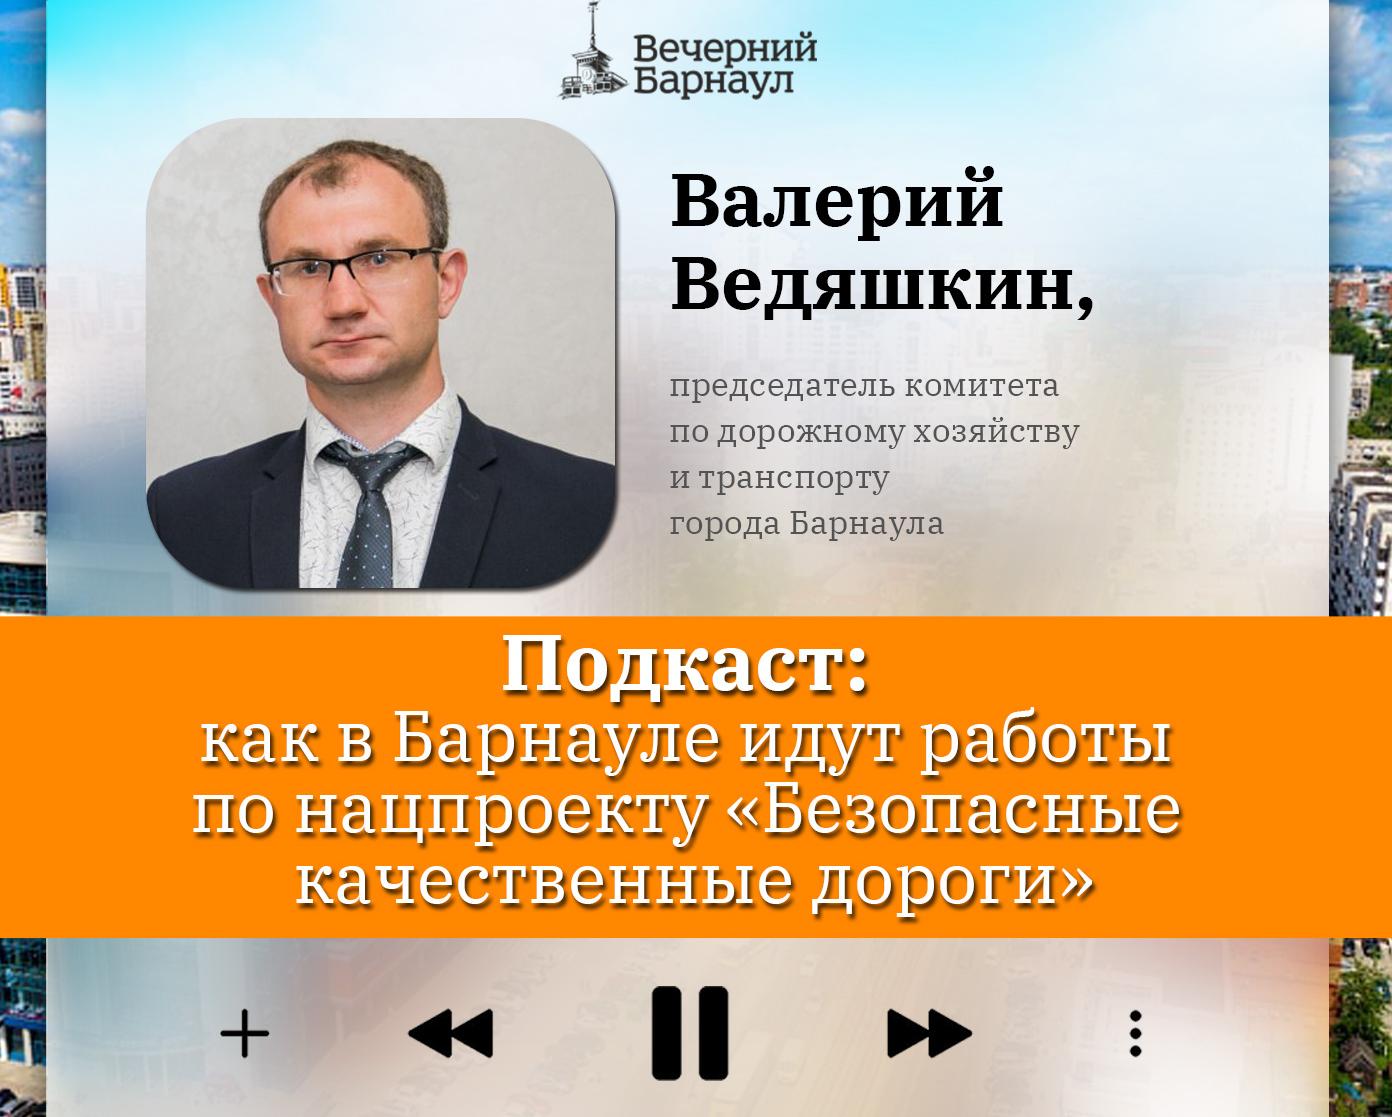 Подкаст: как в Барнауле идут работы по нацпроекту «Безопасные качественные дороги»